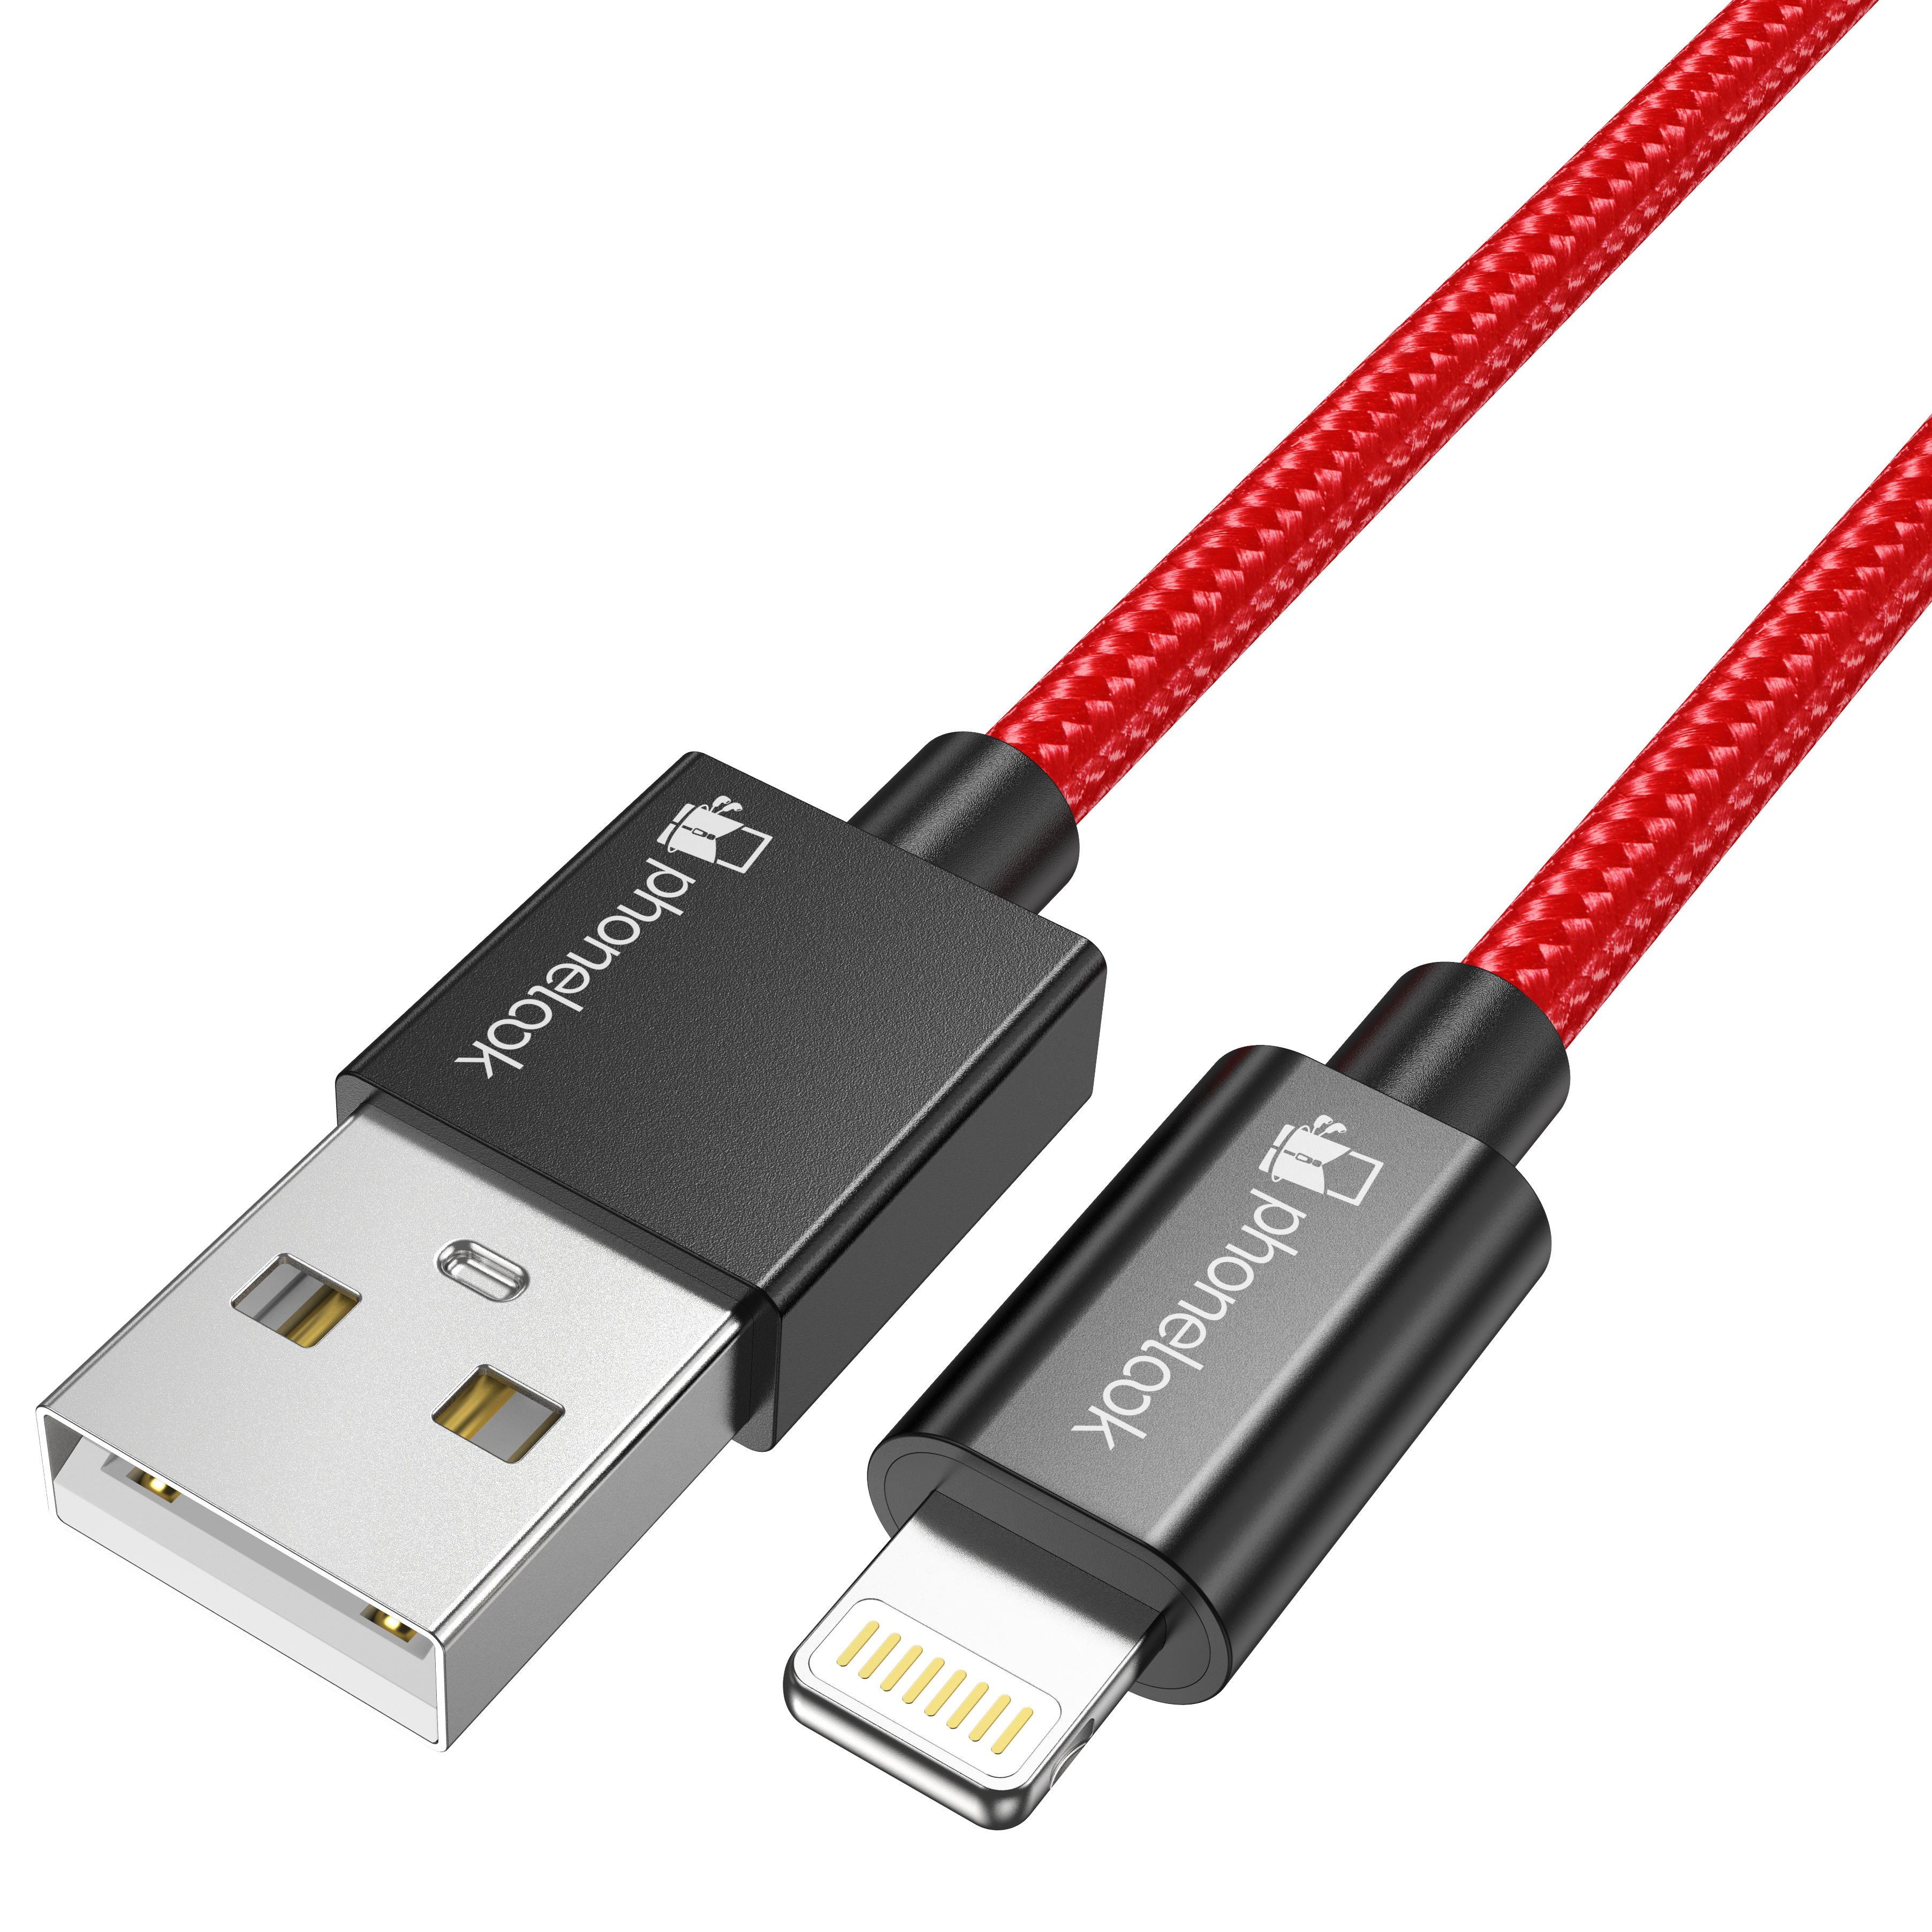 Cables USB GENERIQUE Câble iPhone Chargeur iPhone, [2m/Lot de 3